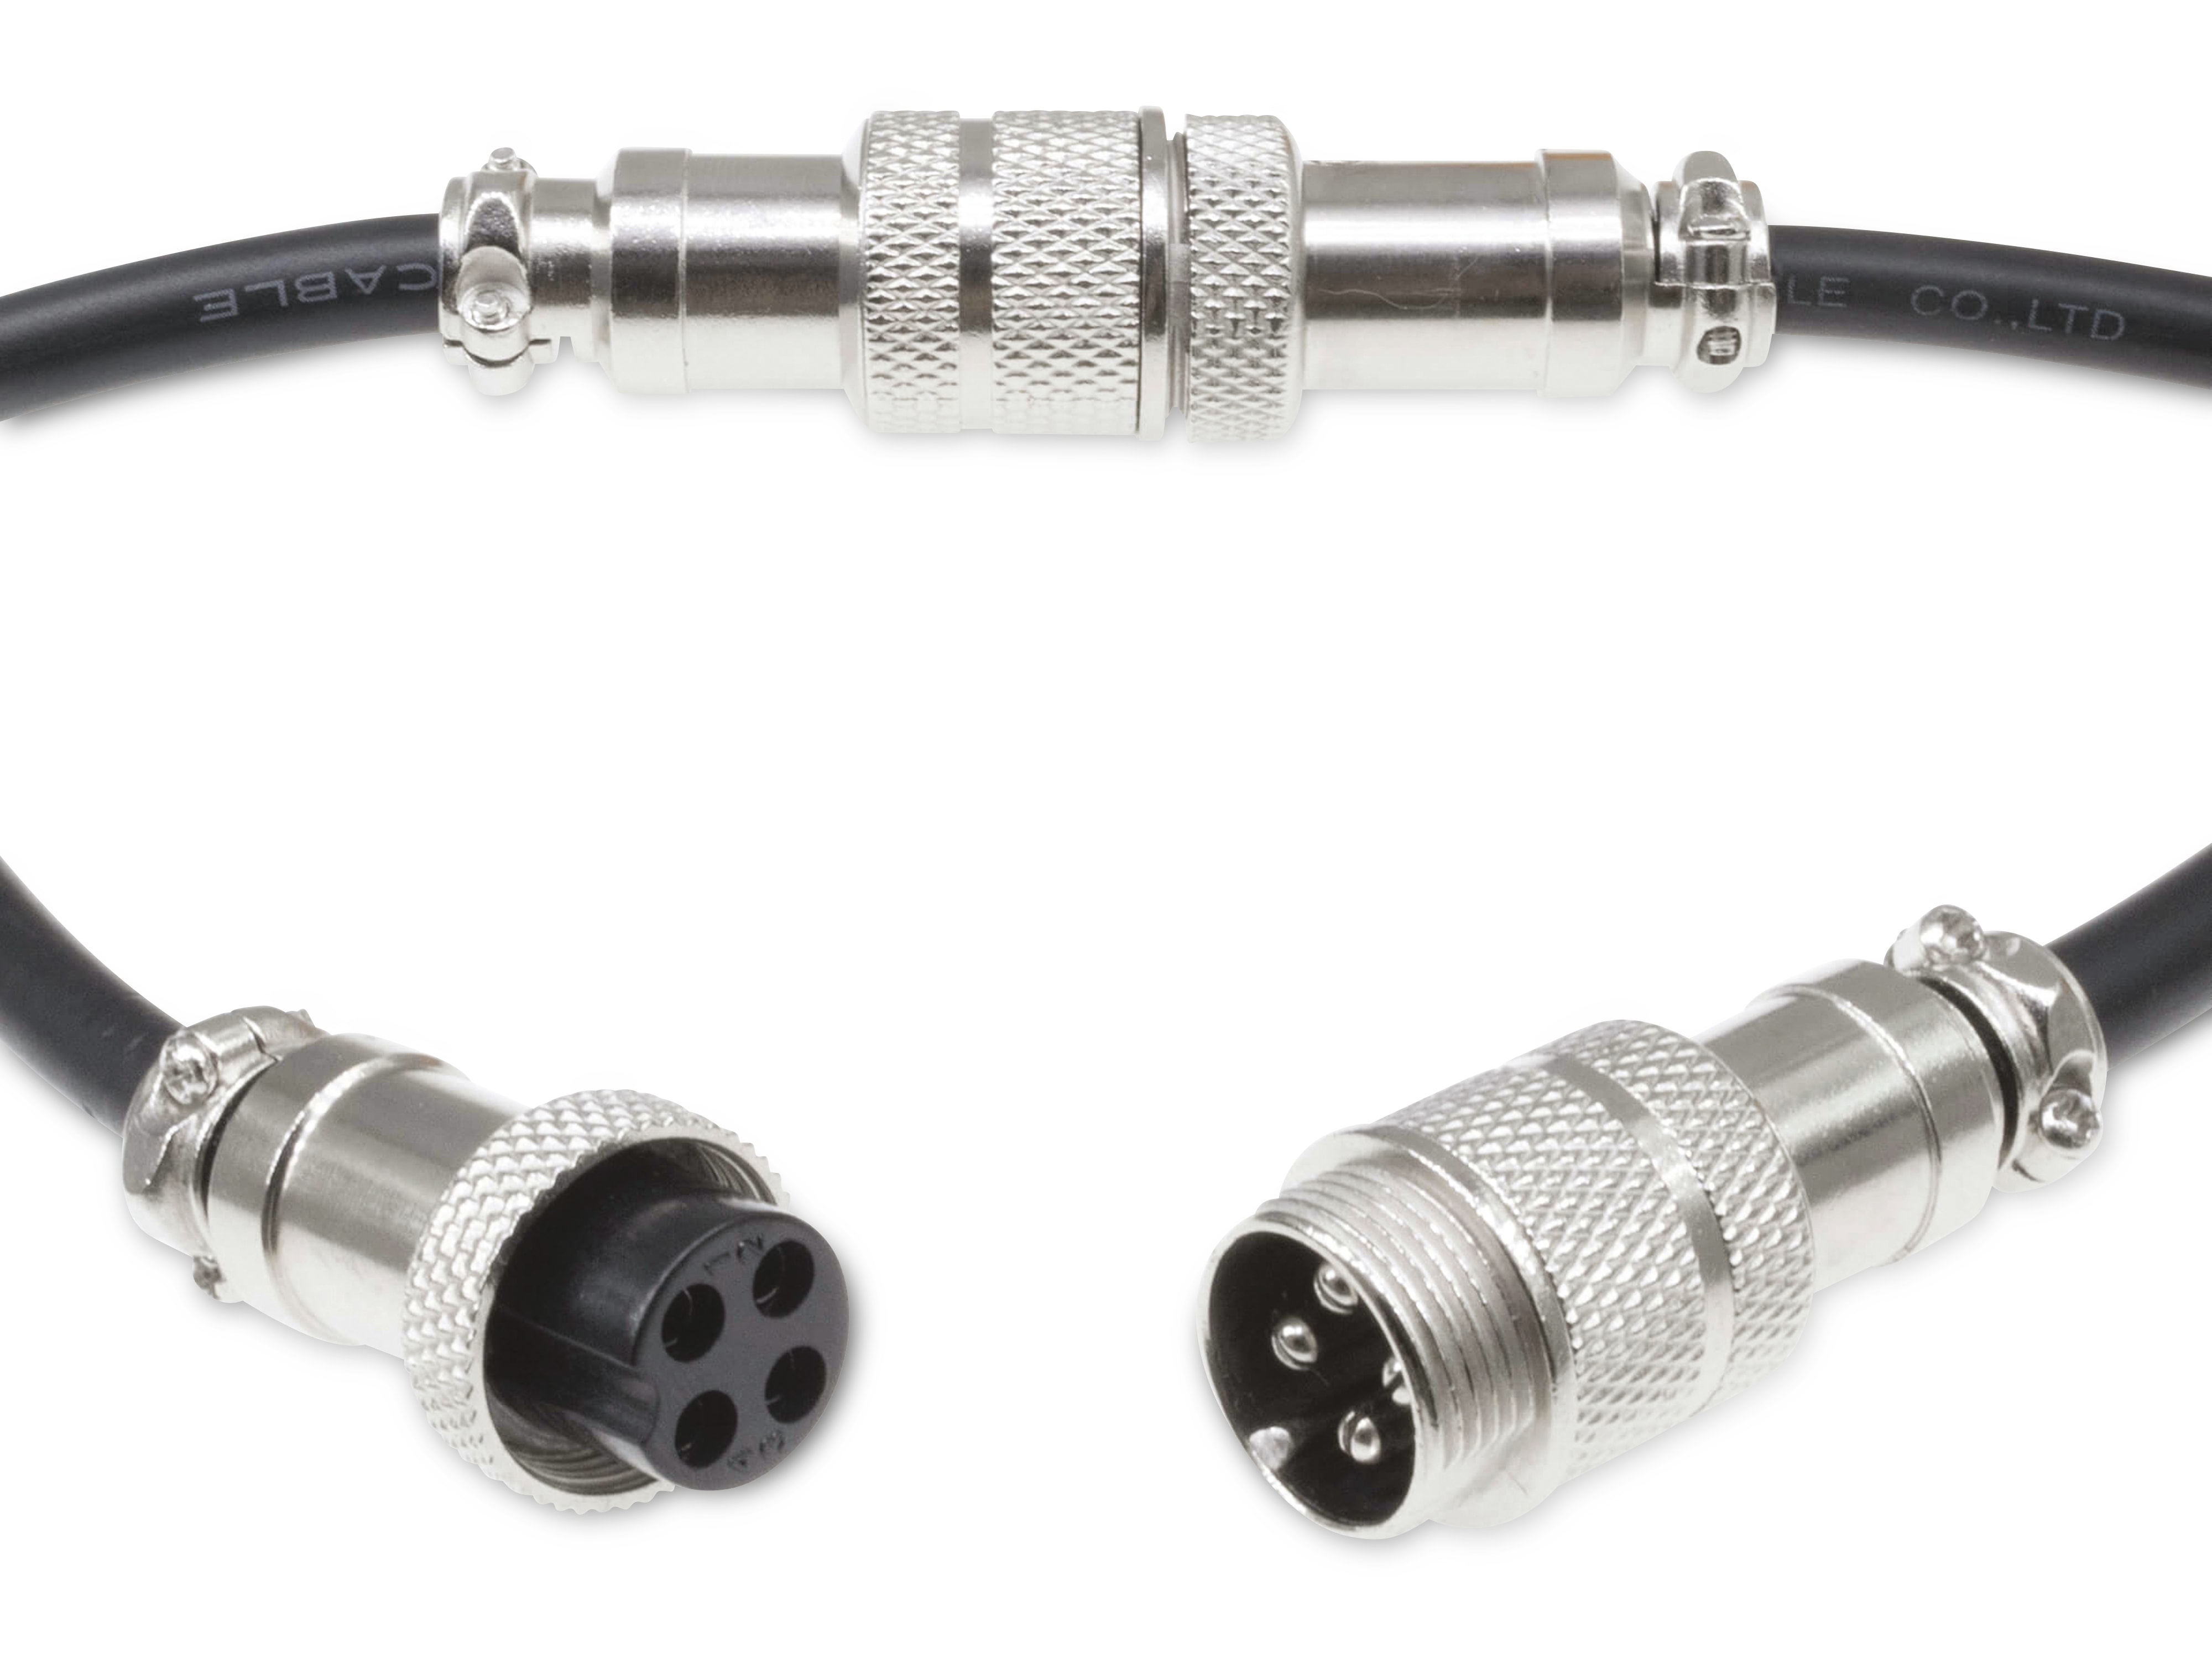 Rundsteckverbinder, 4-polig, 60V, 7A, Lötanschluss, IP55, wire to wire, 1 Stecker + 1 Buchse